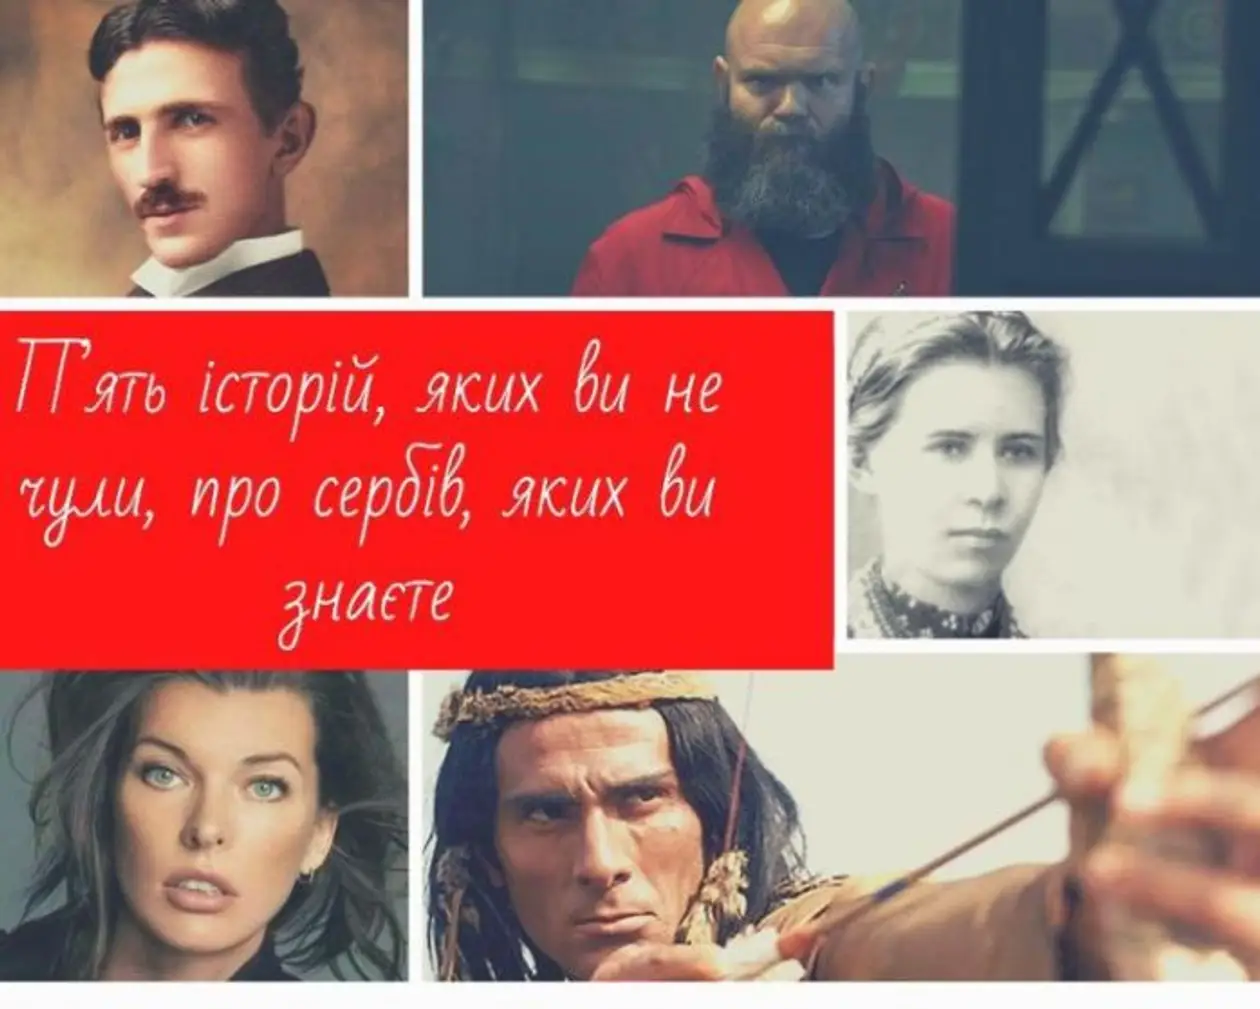 П’ять історій, яких ви не чули, про сербів, яких ви знаєте